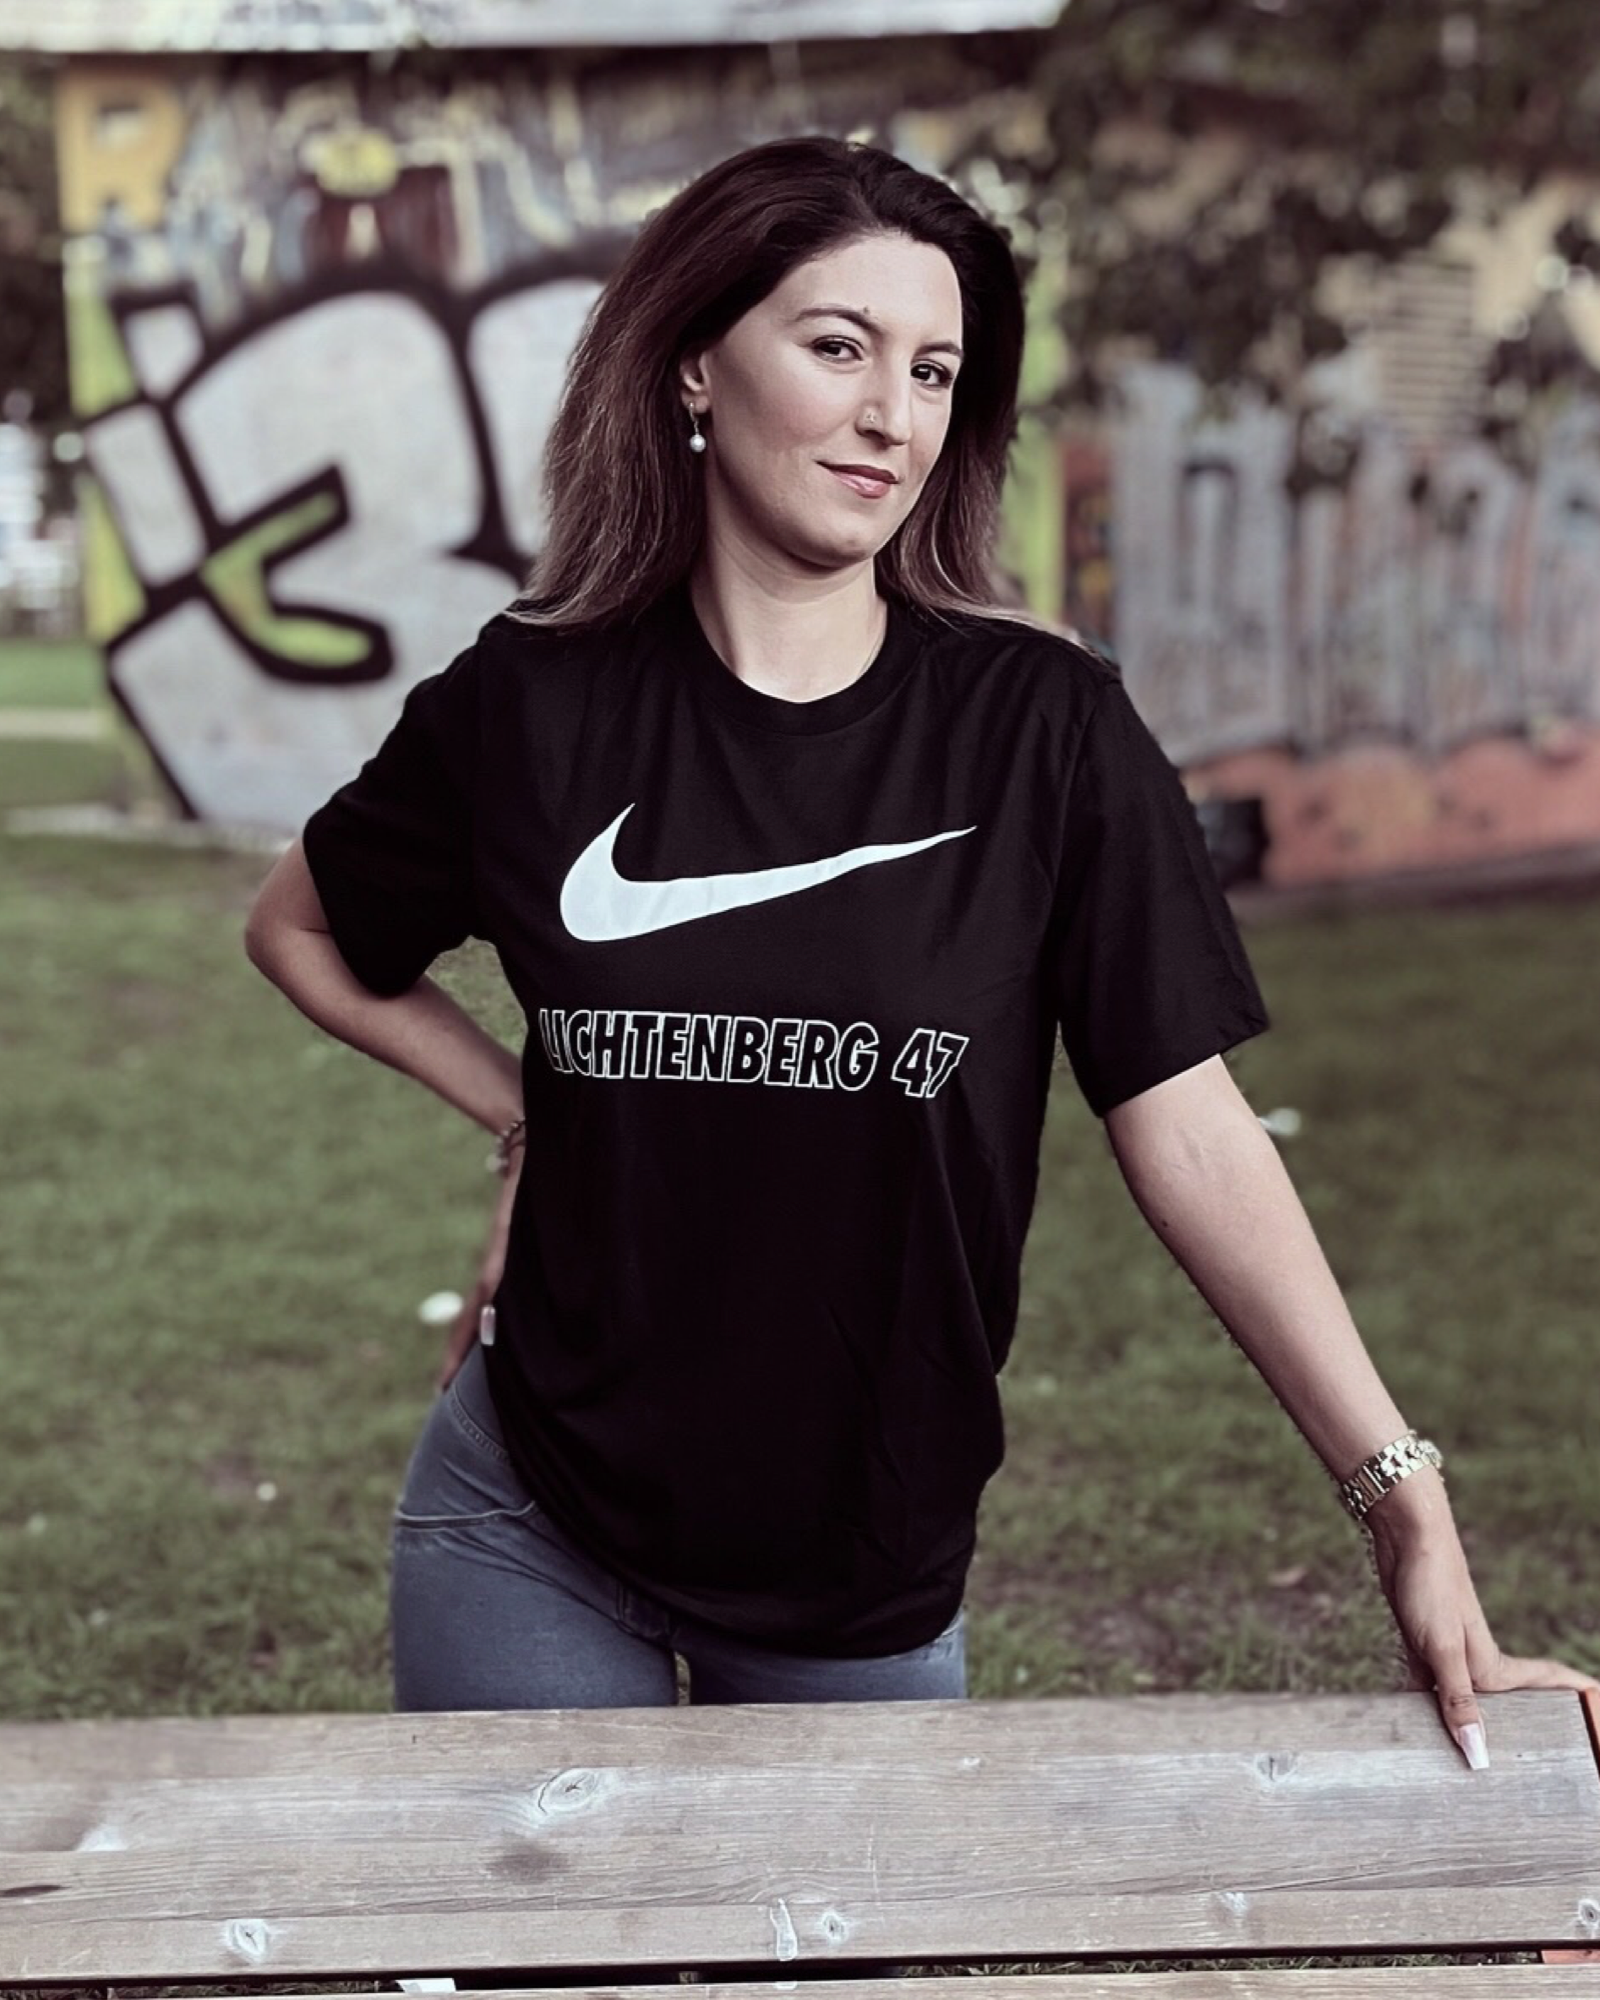 Nike 47er T-Shirt Schwarz - Lichtenberg 47